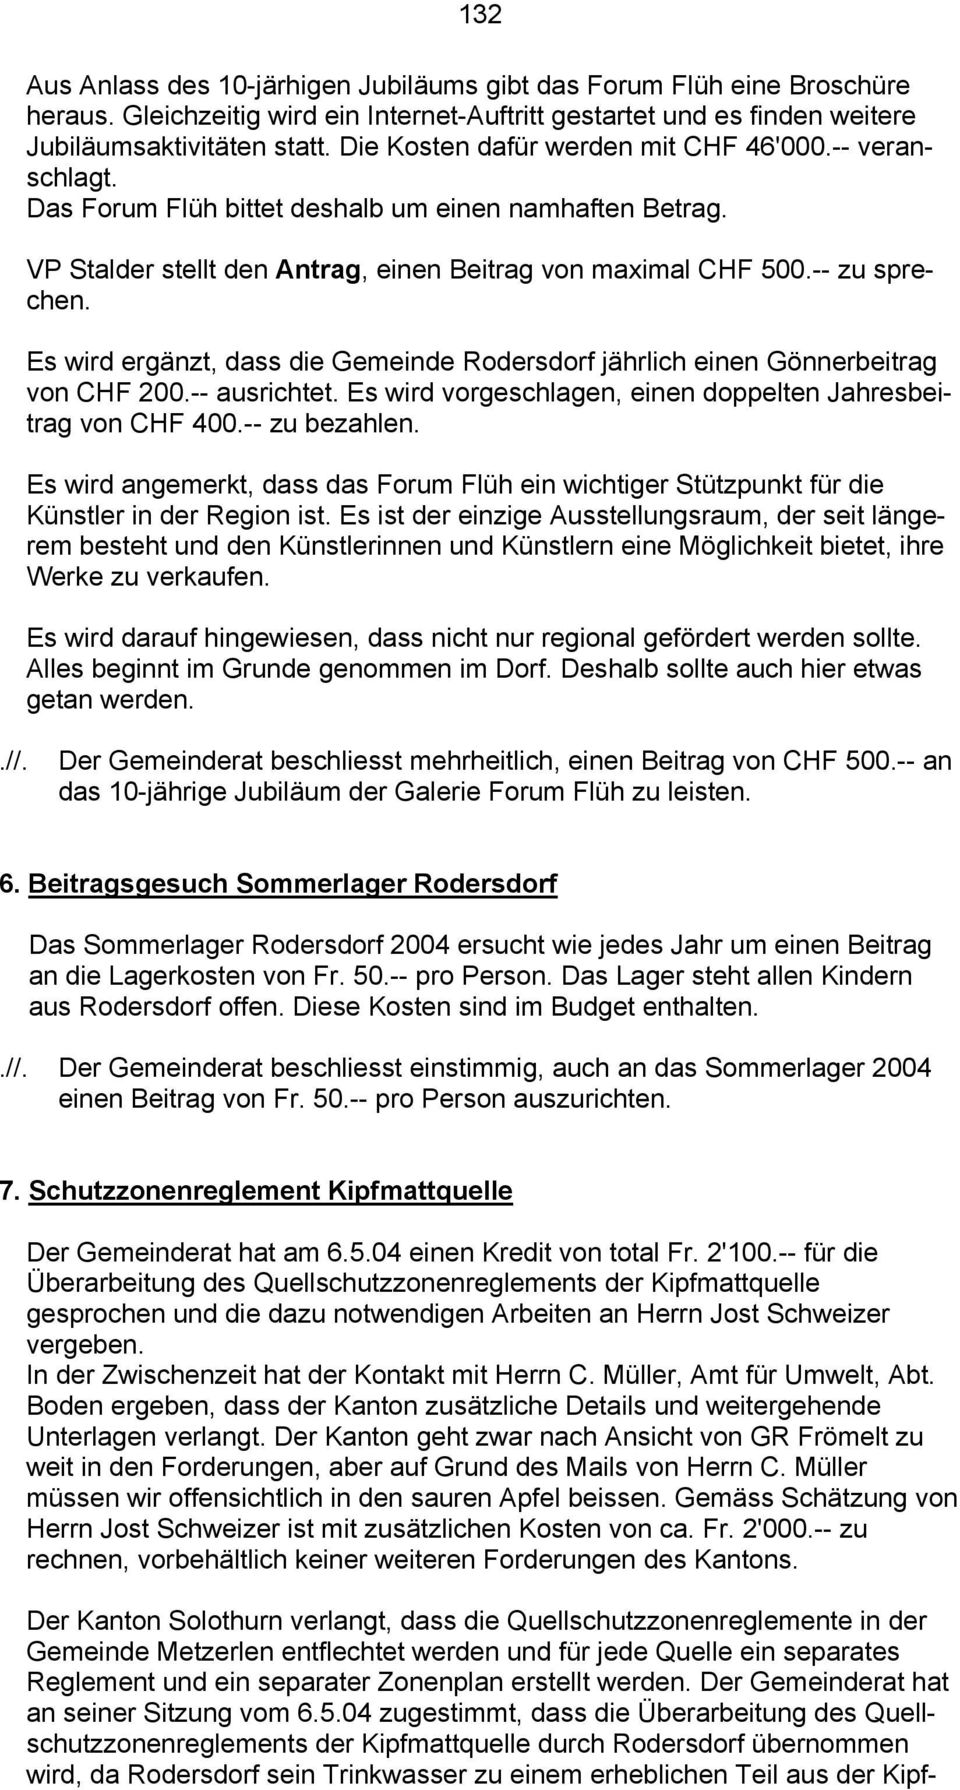 Es wird ergänzt, dass die Gemeinde Rodersdorf jährlich einen Gönnerbeitrag von CHF 200.-- ausrichtet. Es wird vorgeschlagen, einen doppelten Jahresbeitrag von CHF 400.-- zu bezahlen.